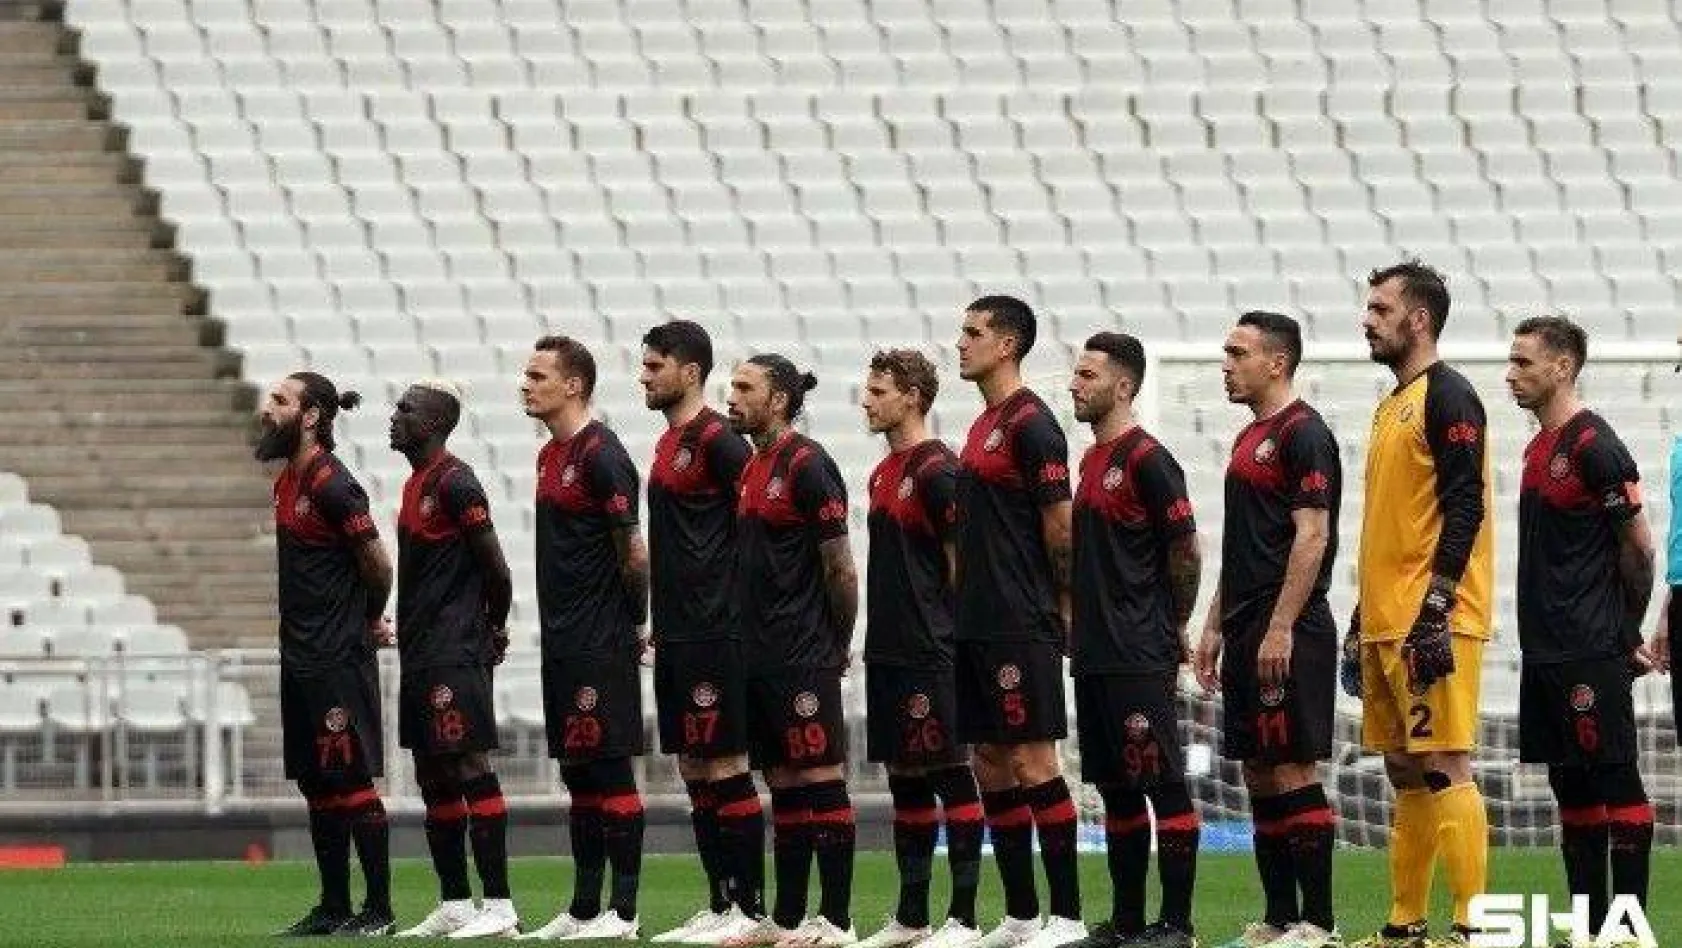 Süper Lig: Fatih Karagümrük: 0 - Hatayspor: 0 (Maç devam ediyor)